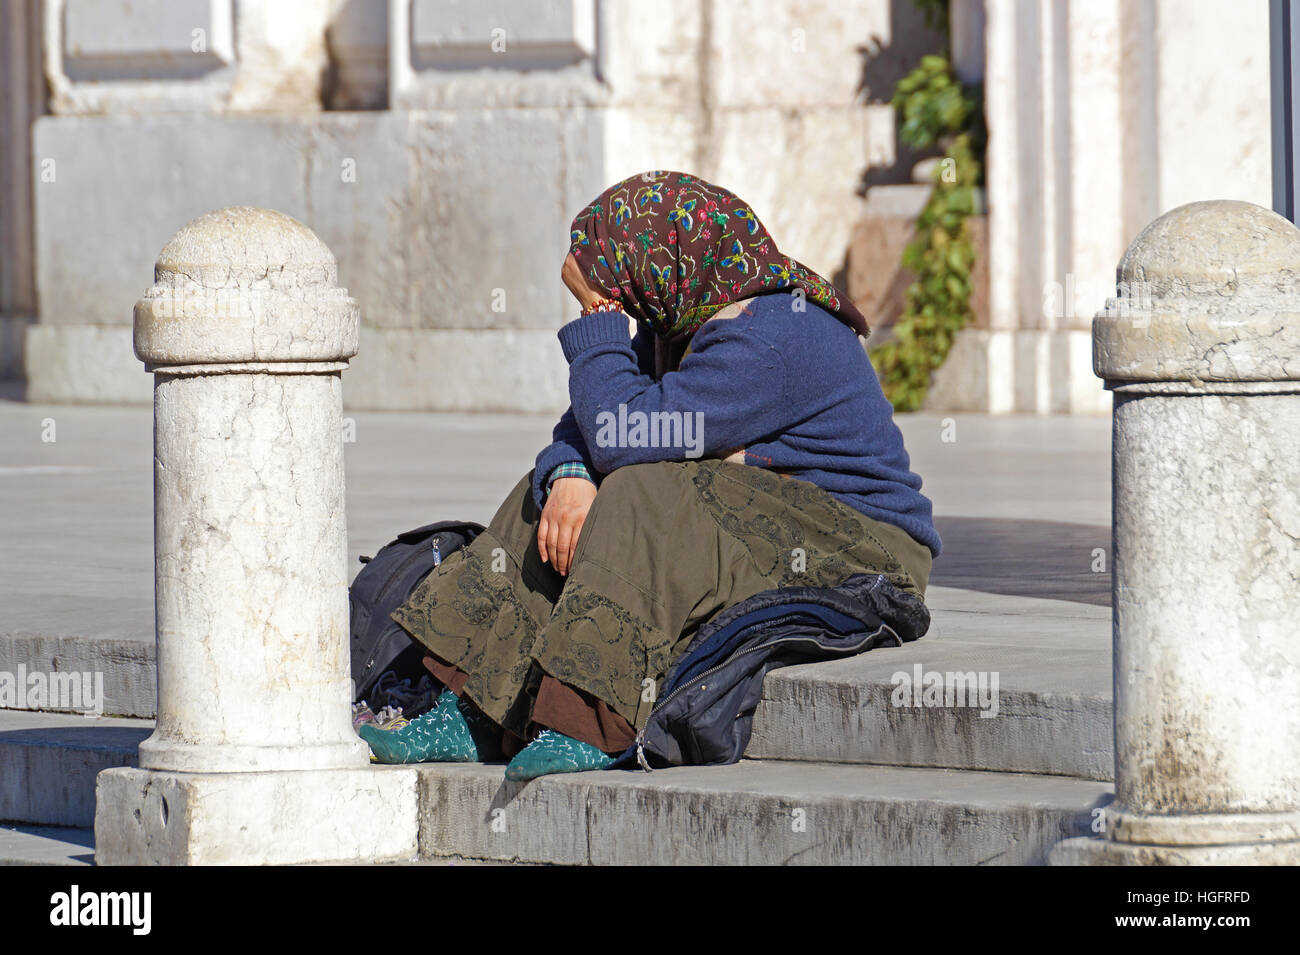 Rom, Italien - 24. März 2016: Obdachlose, wie abgebildet, können fast an jeder Ecke an jeder Straßenecke in der Mitte von allen großen Städten gesehen werden Stockfoto